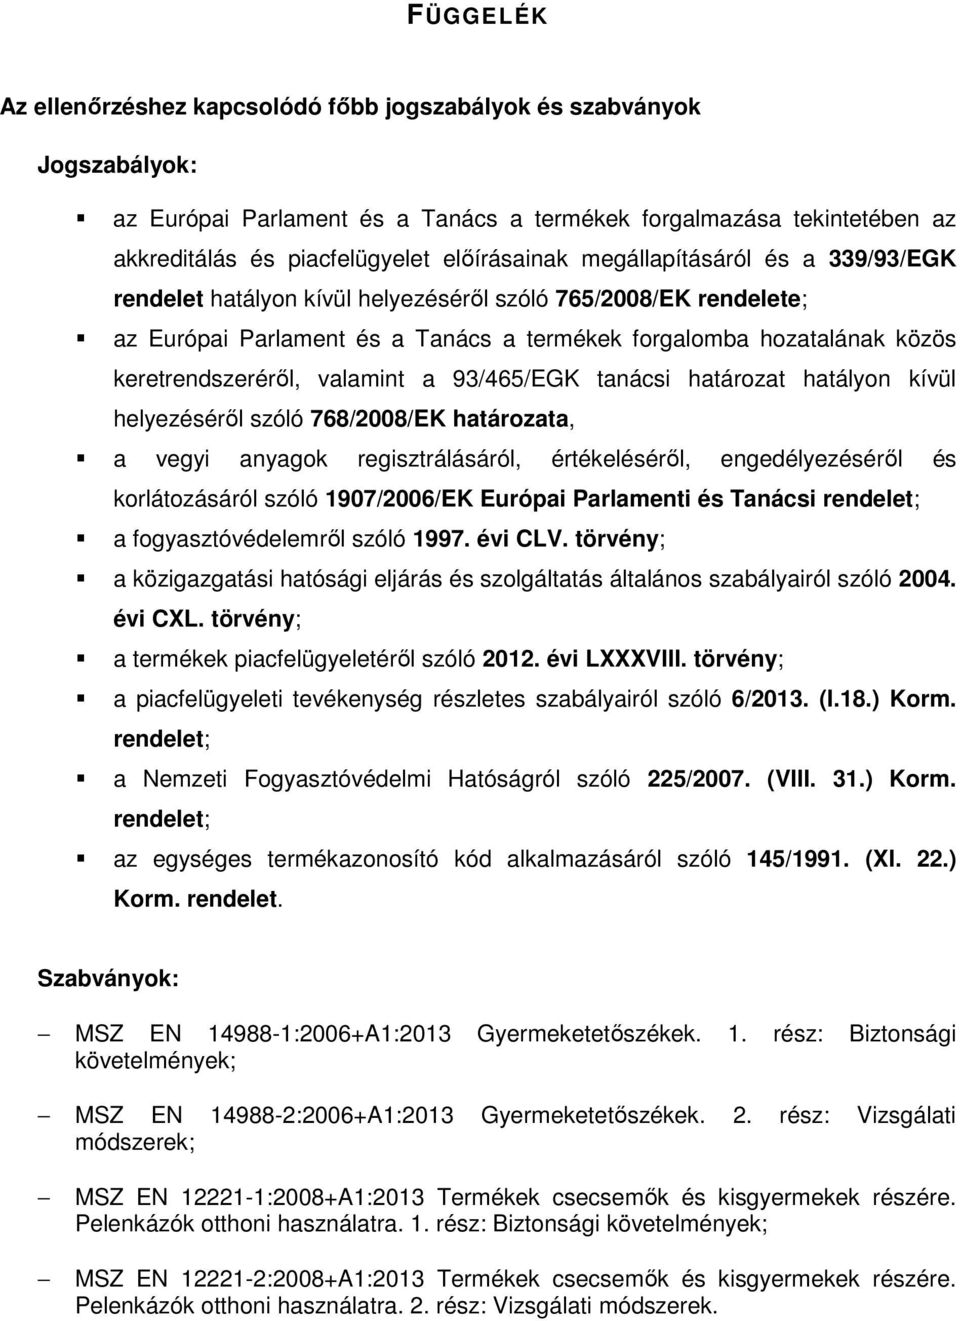 a 93/465/EGK tanácsi határozat hatályon kívül helyezéséről szóló 768/2008/EK határozata, a vegyi anyagok regisztrálásáról, értékeléséről, engedélyezéséről és korlátozásáról szóló 1907/2006/EK Európai